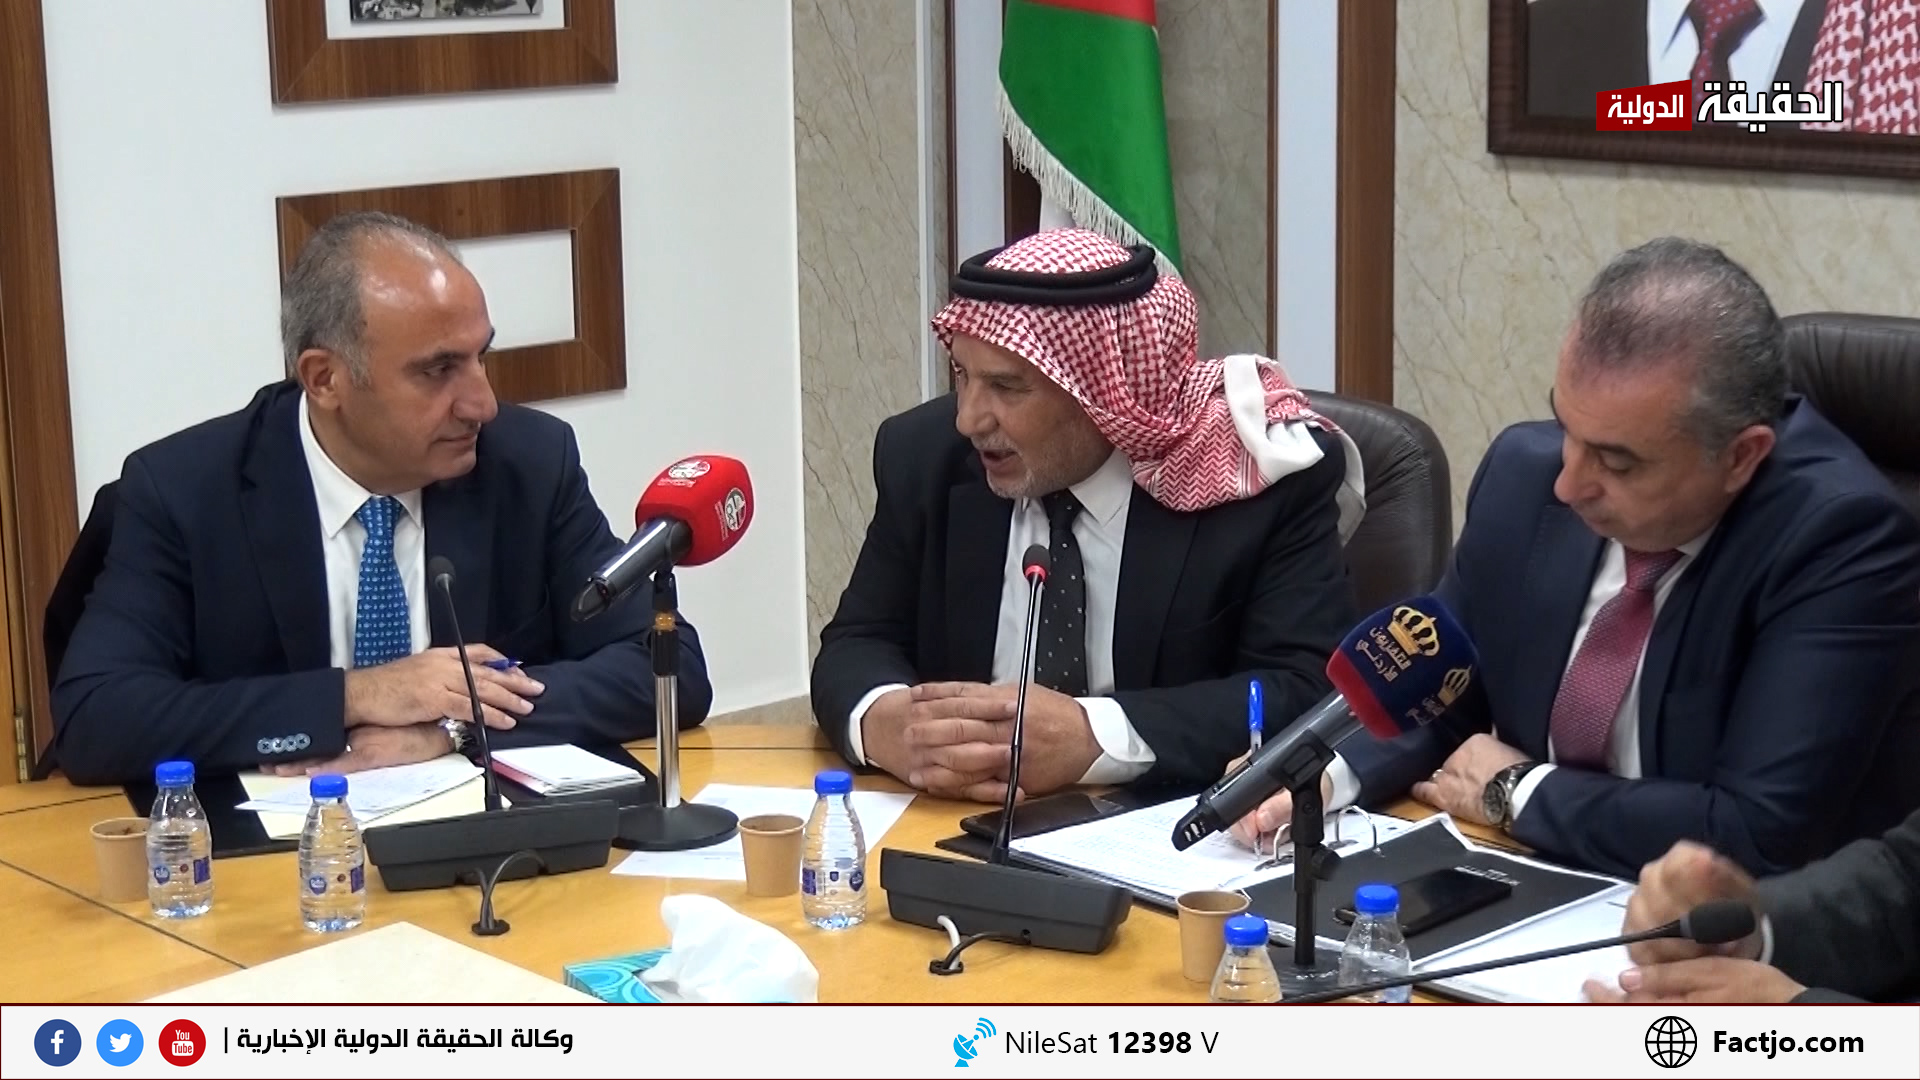 ابو صعيليك لإمين عمان: "4 سنوات وانا احاول مقابلتك ودائما مدير مكتبك يقول  اجتماع" - فيديو